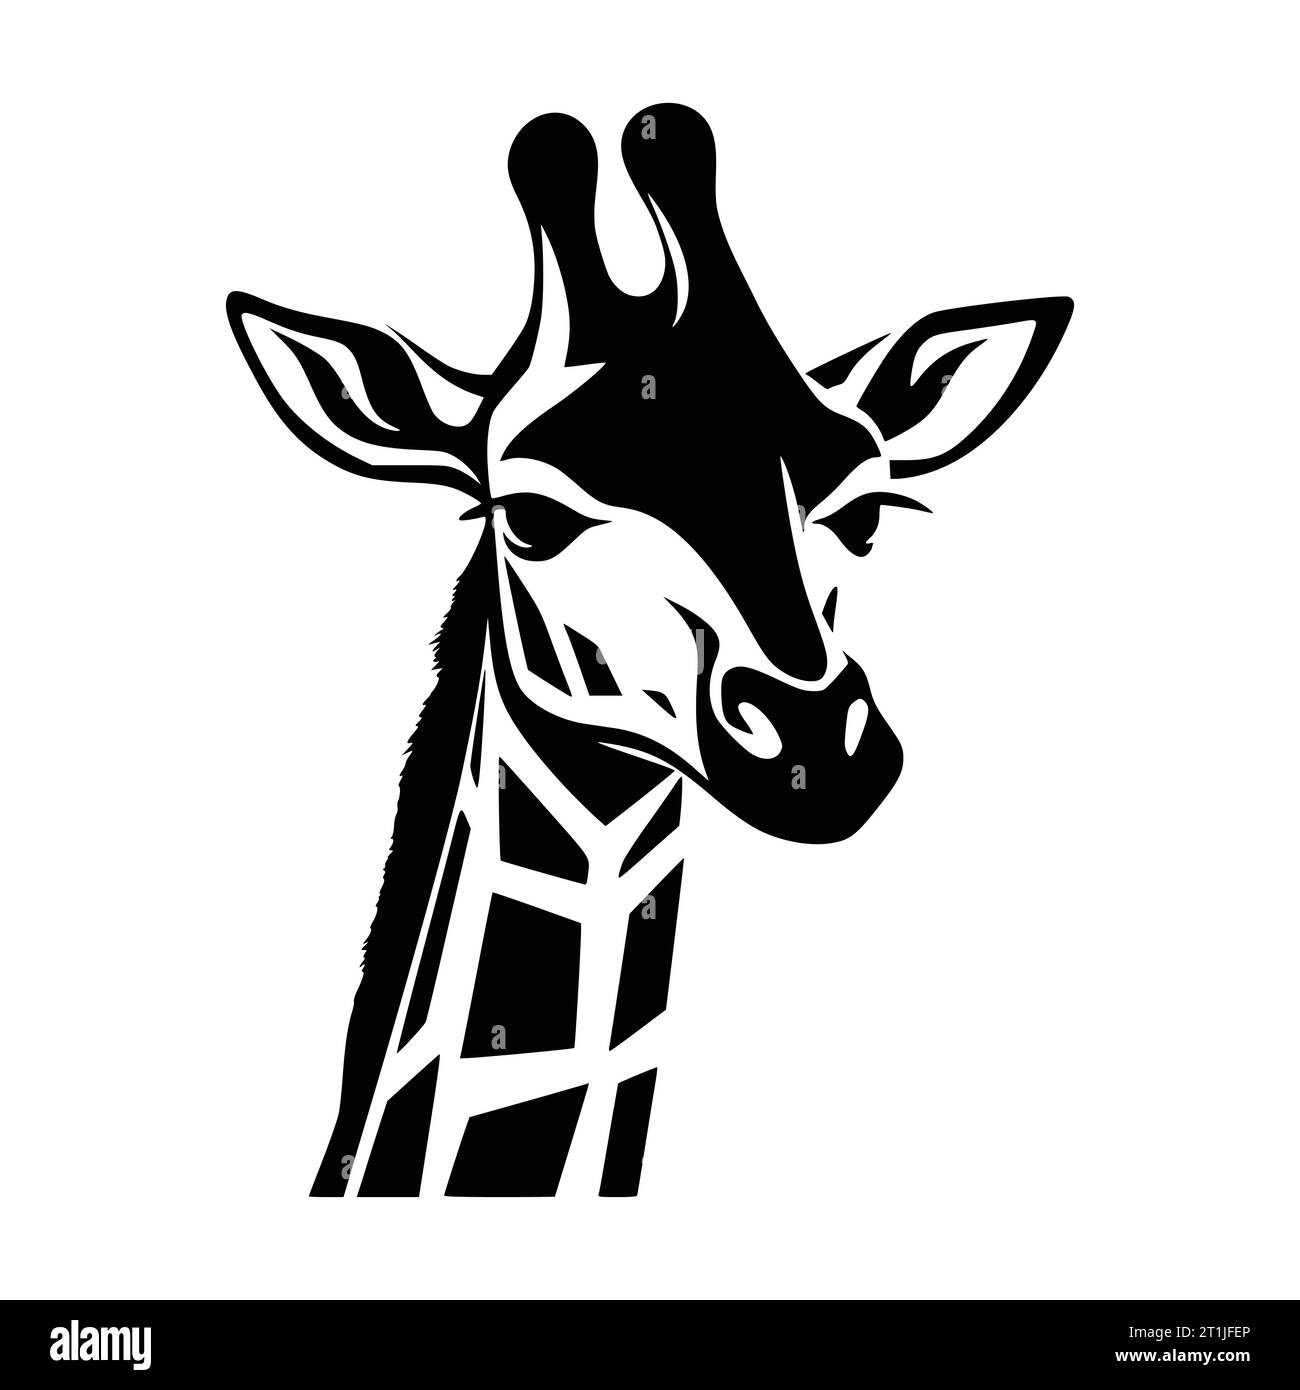 giraffe mammal wild animal head illustration for logo or symbol Stock Vector